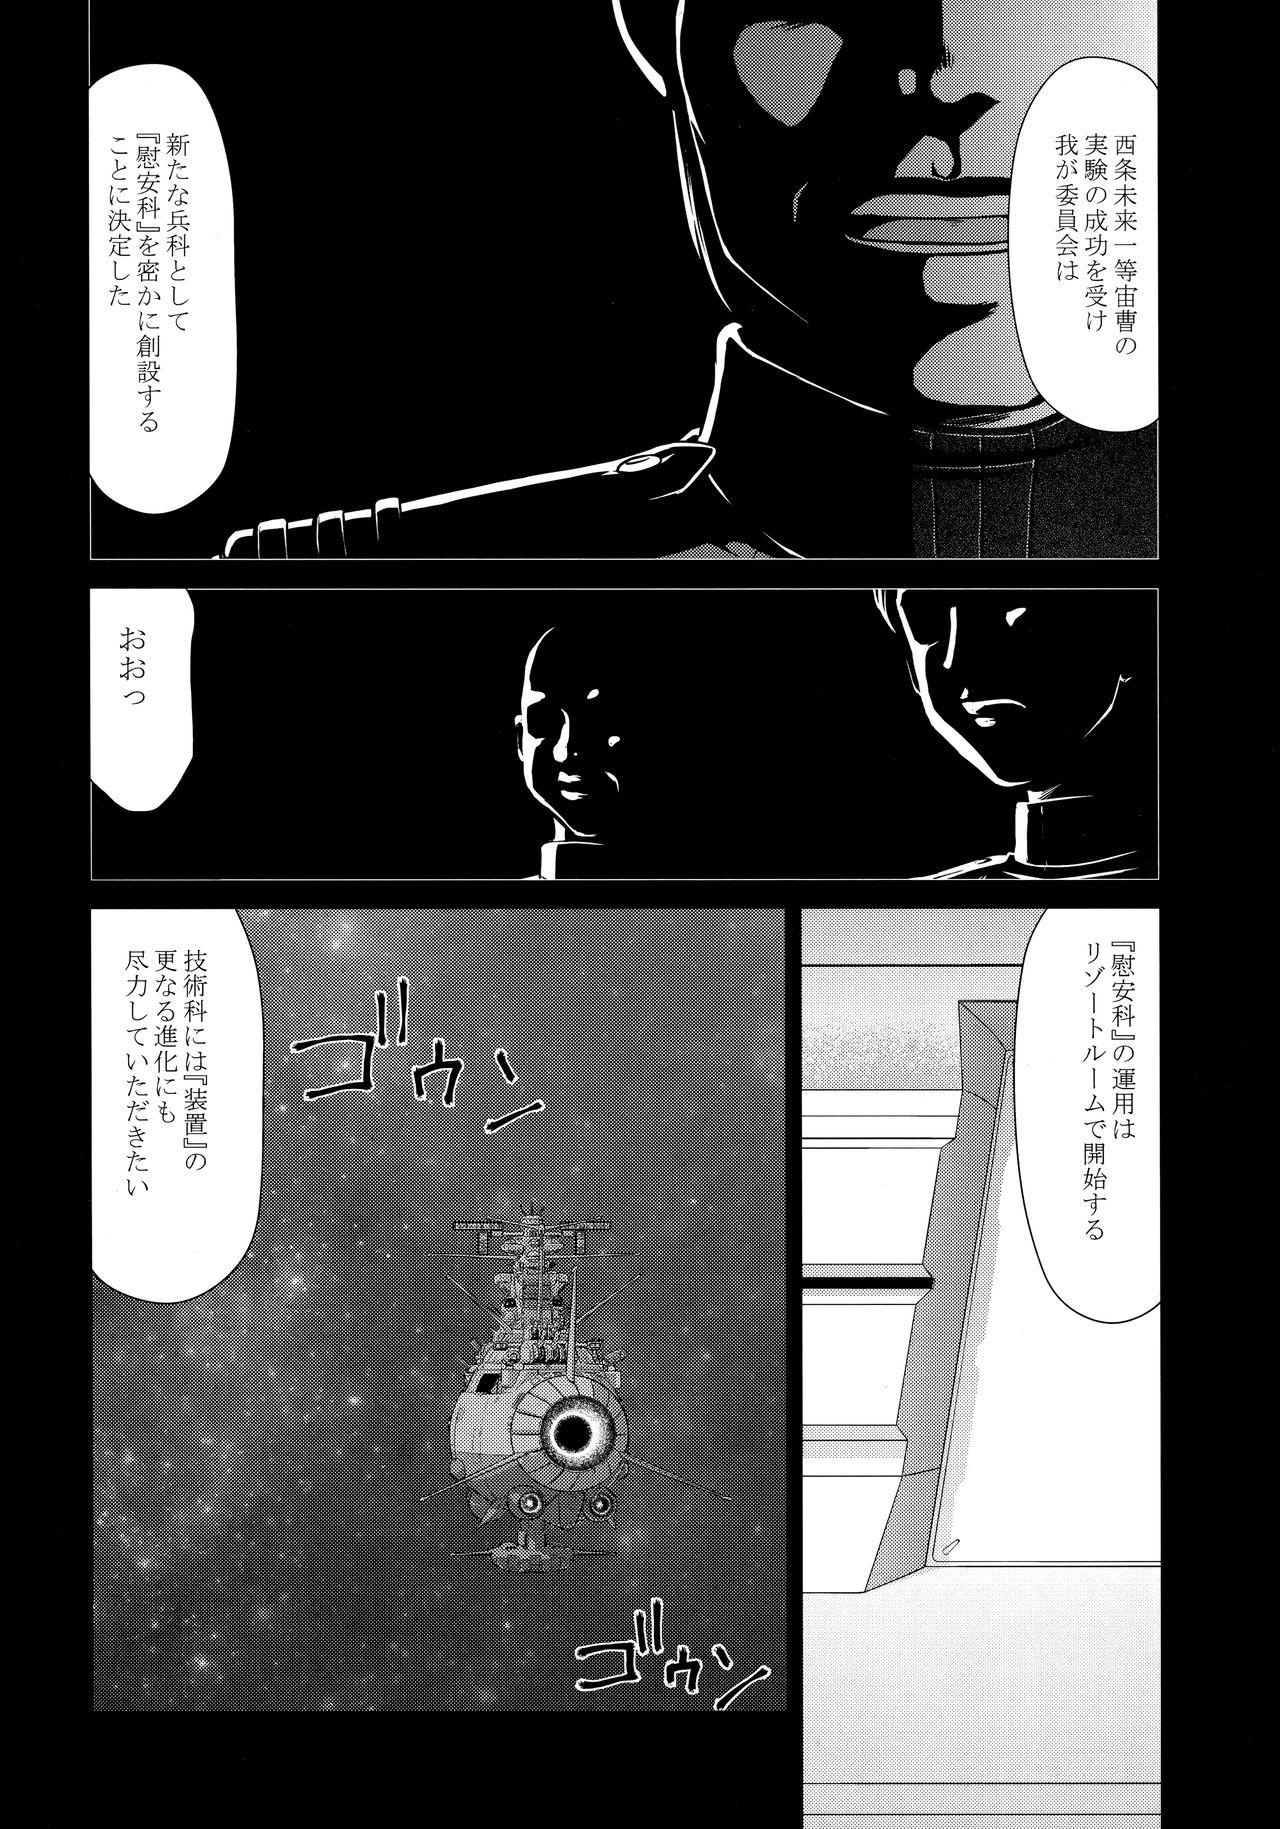 Whipping Yuki no Shizuku Mesu - Space battleship yamato Space battleship yamato 2199 Stepdaughter - Page 11